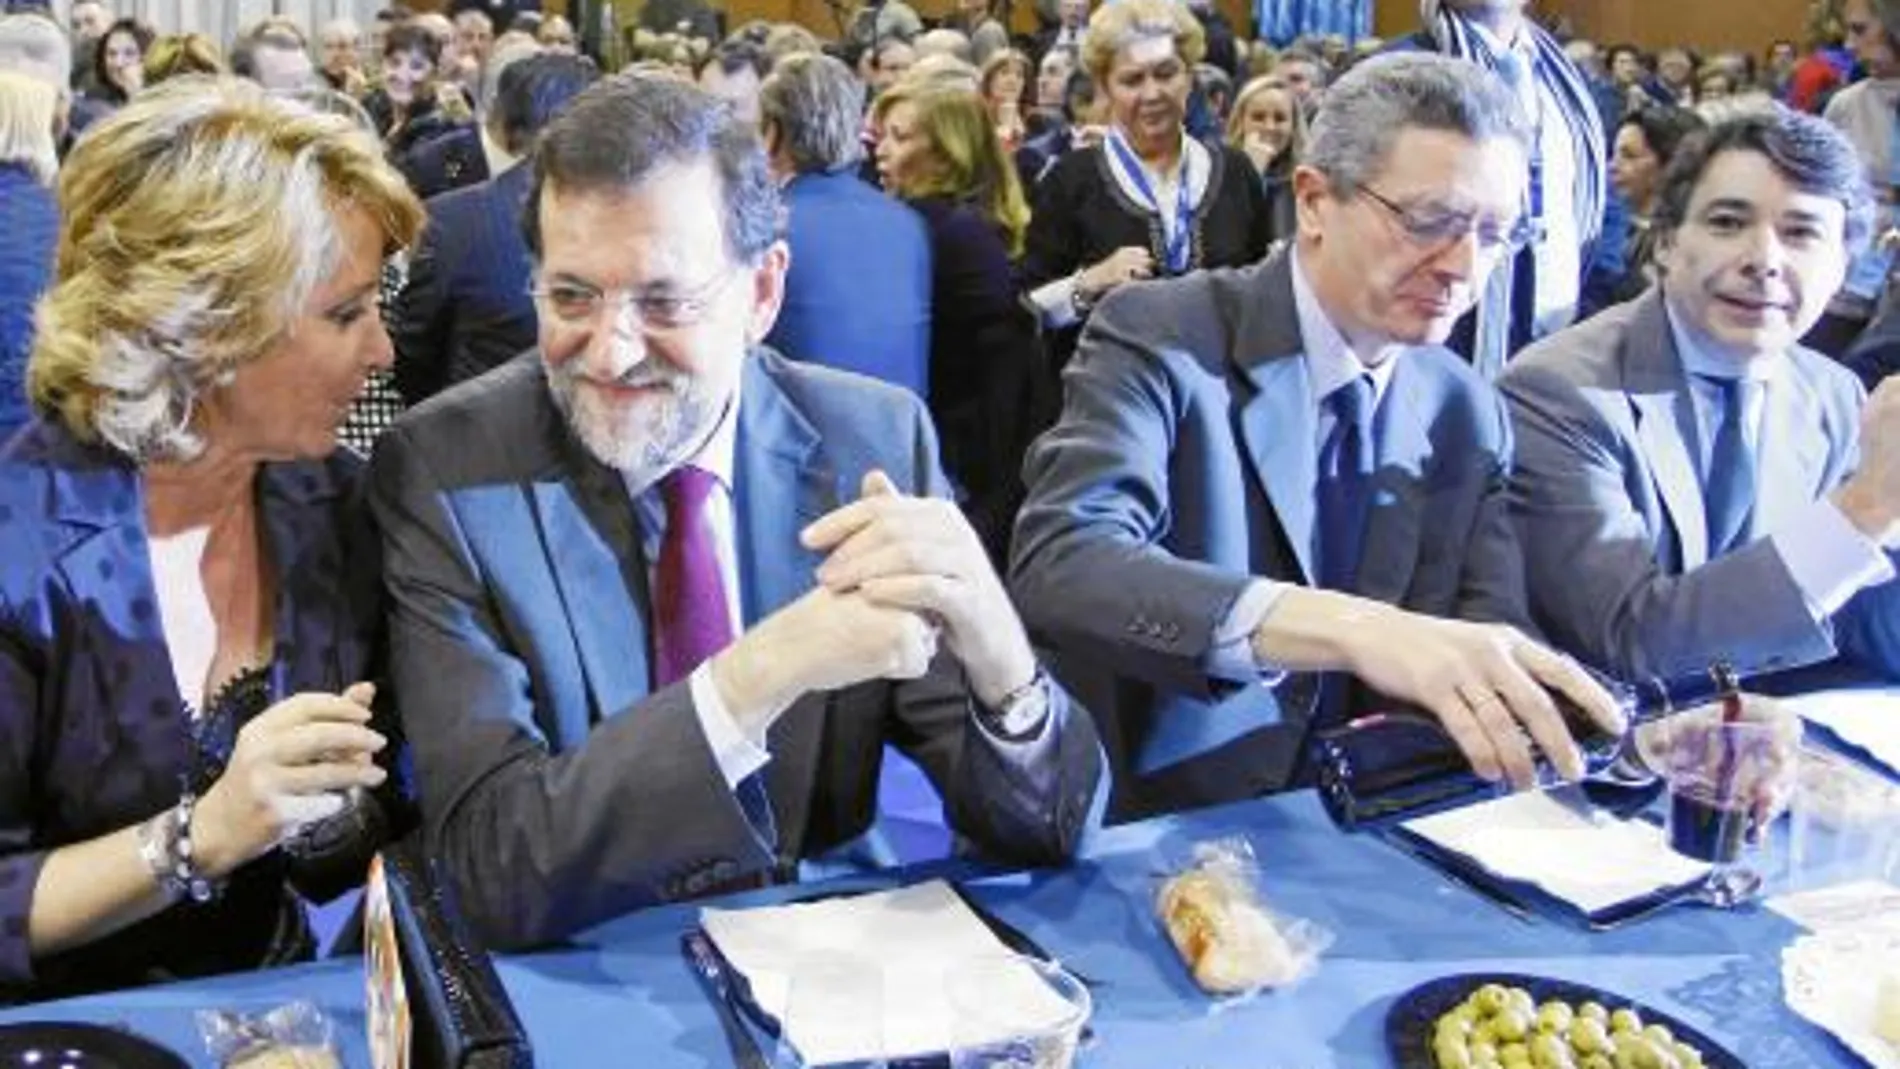 Aguirre, Rajoy, Gallardón y González en la cena del PP, que consistió en paella servida en menaje de plástico